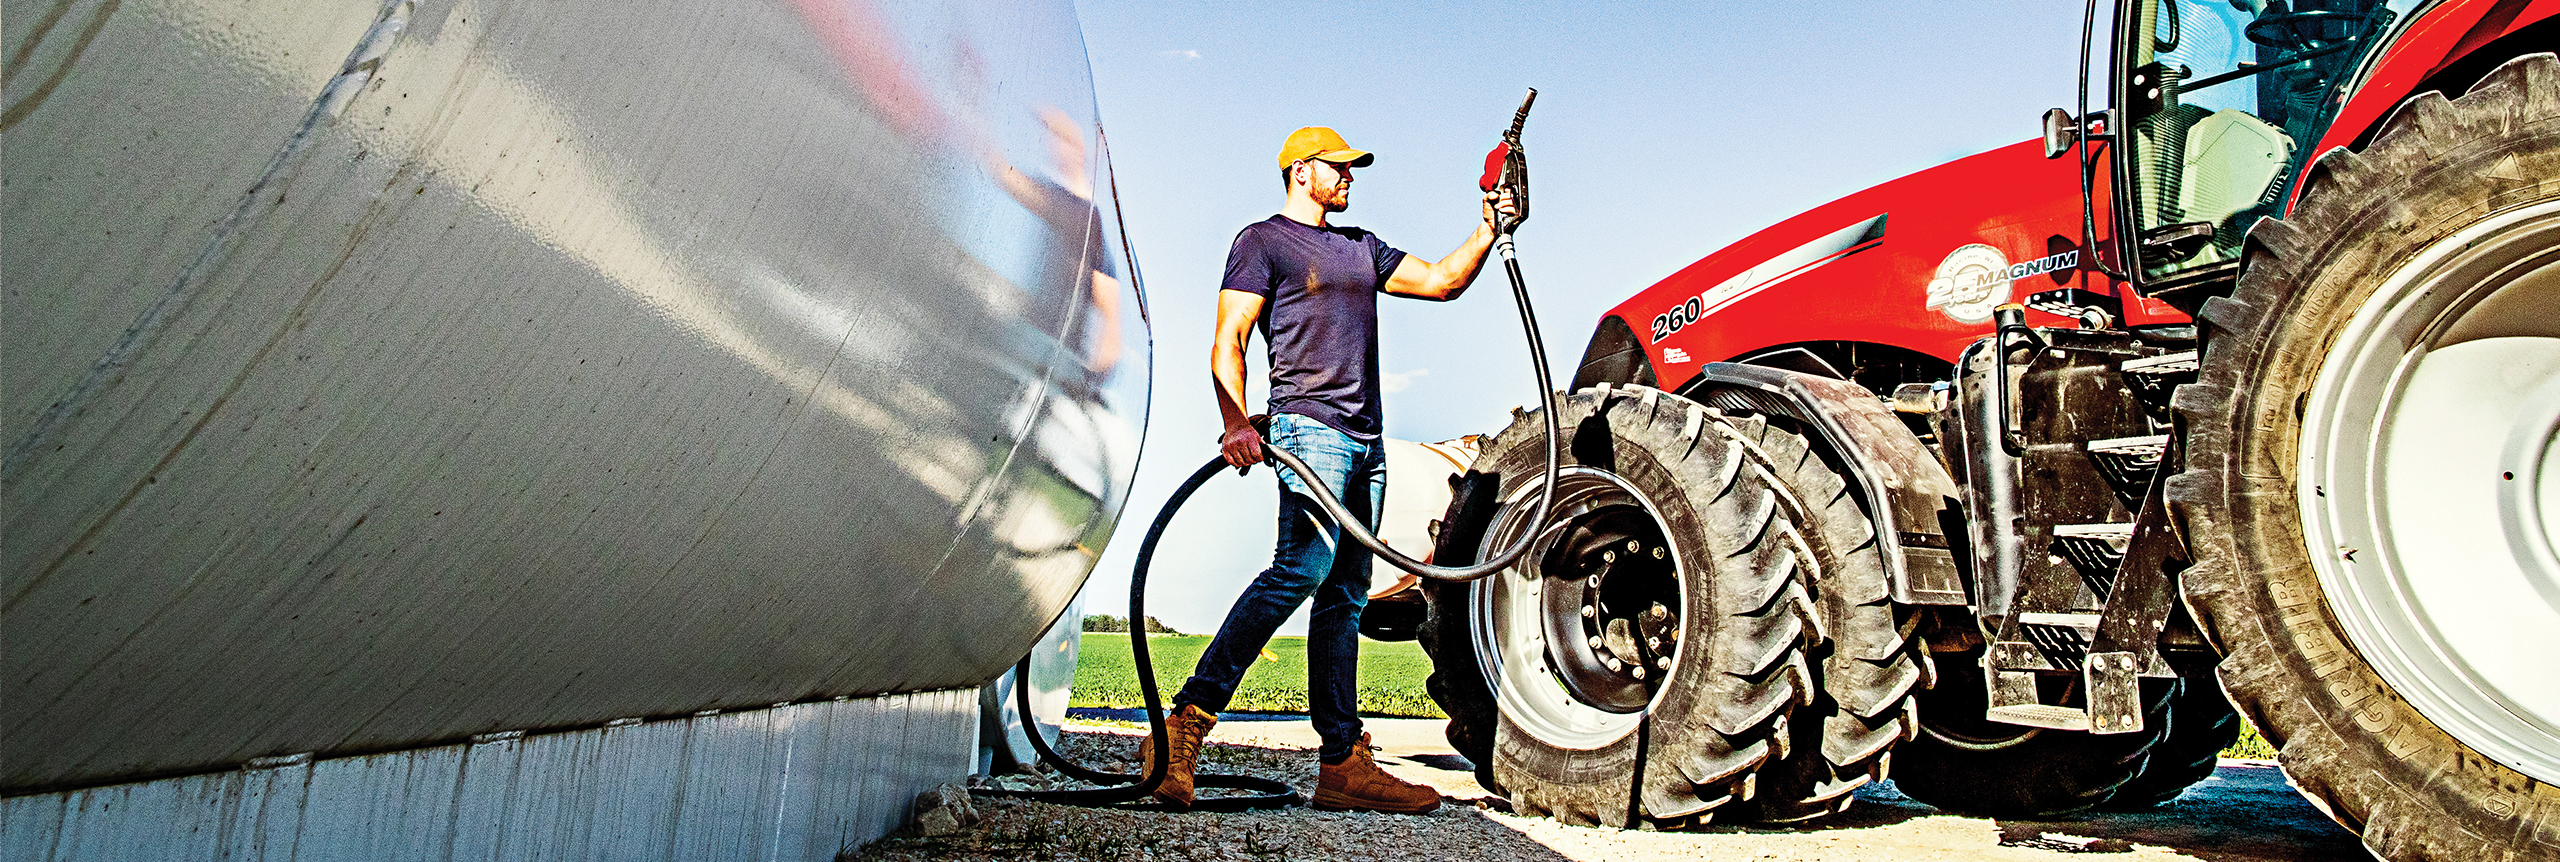 Fueling up farm tractor with Cenex premium diesel fuel.